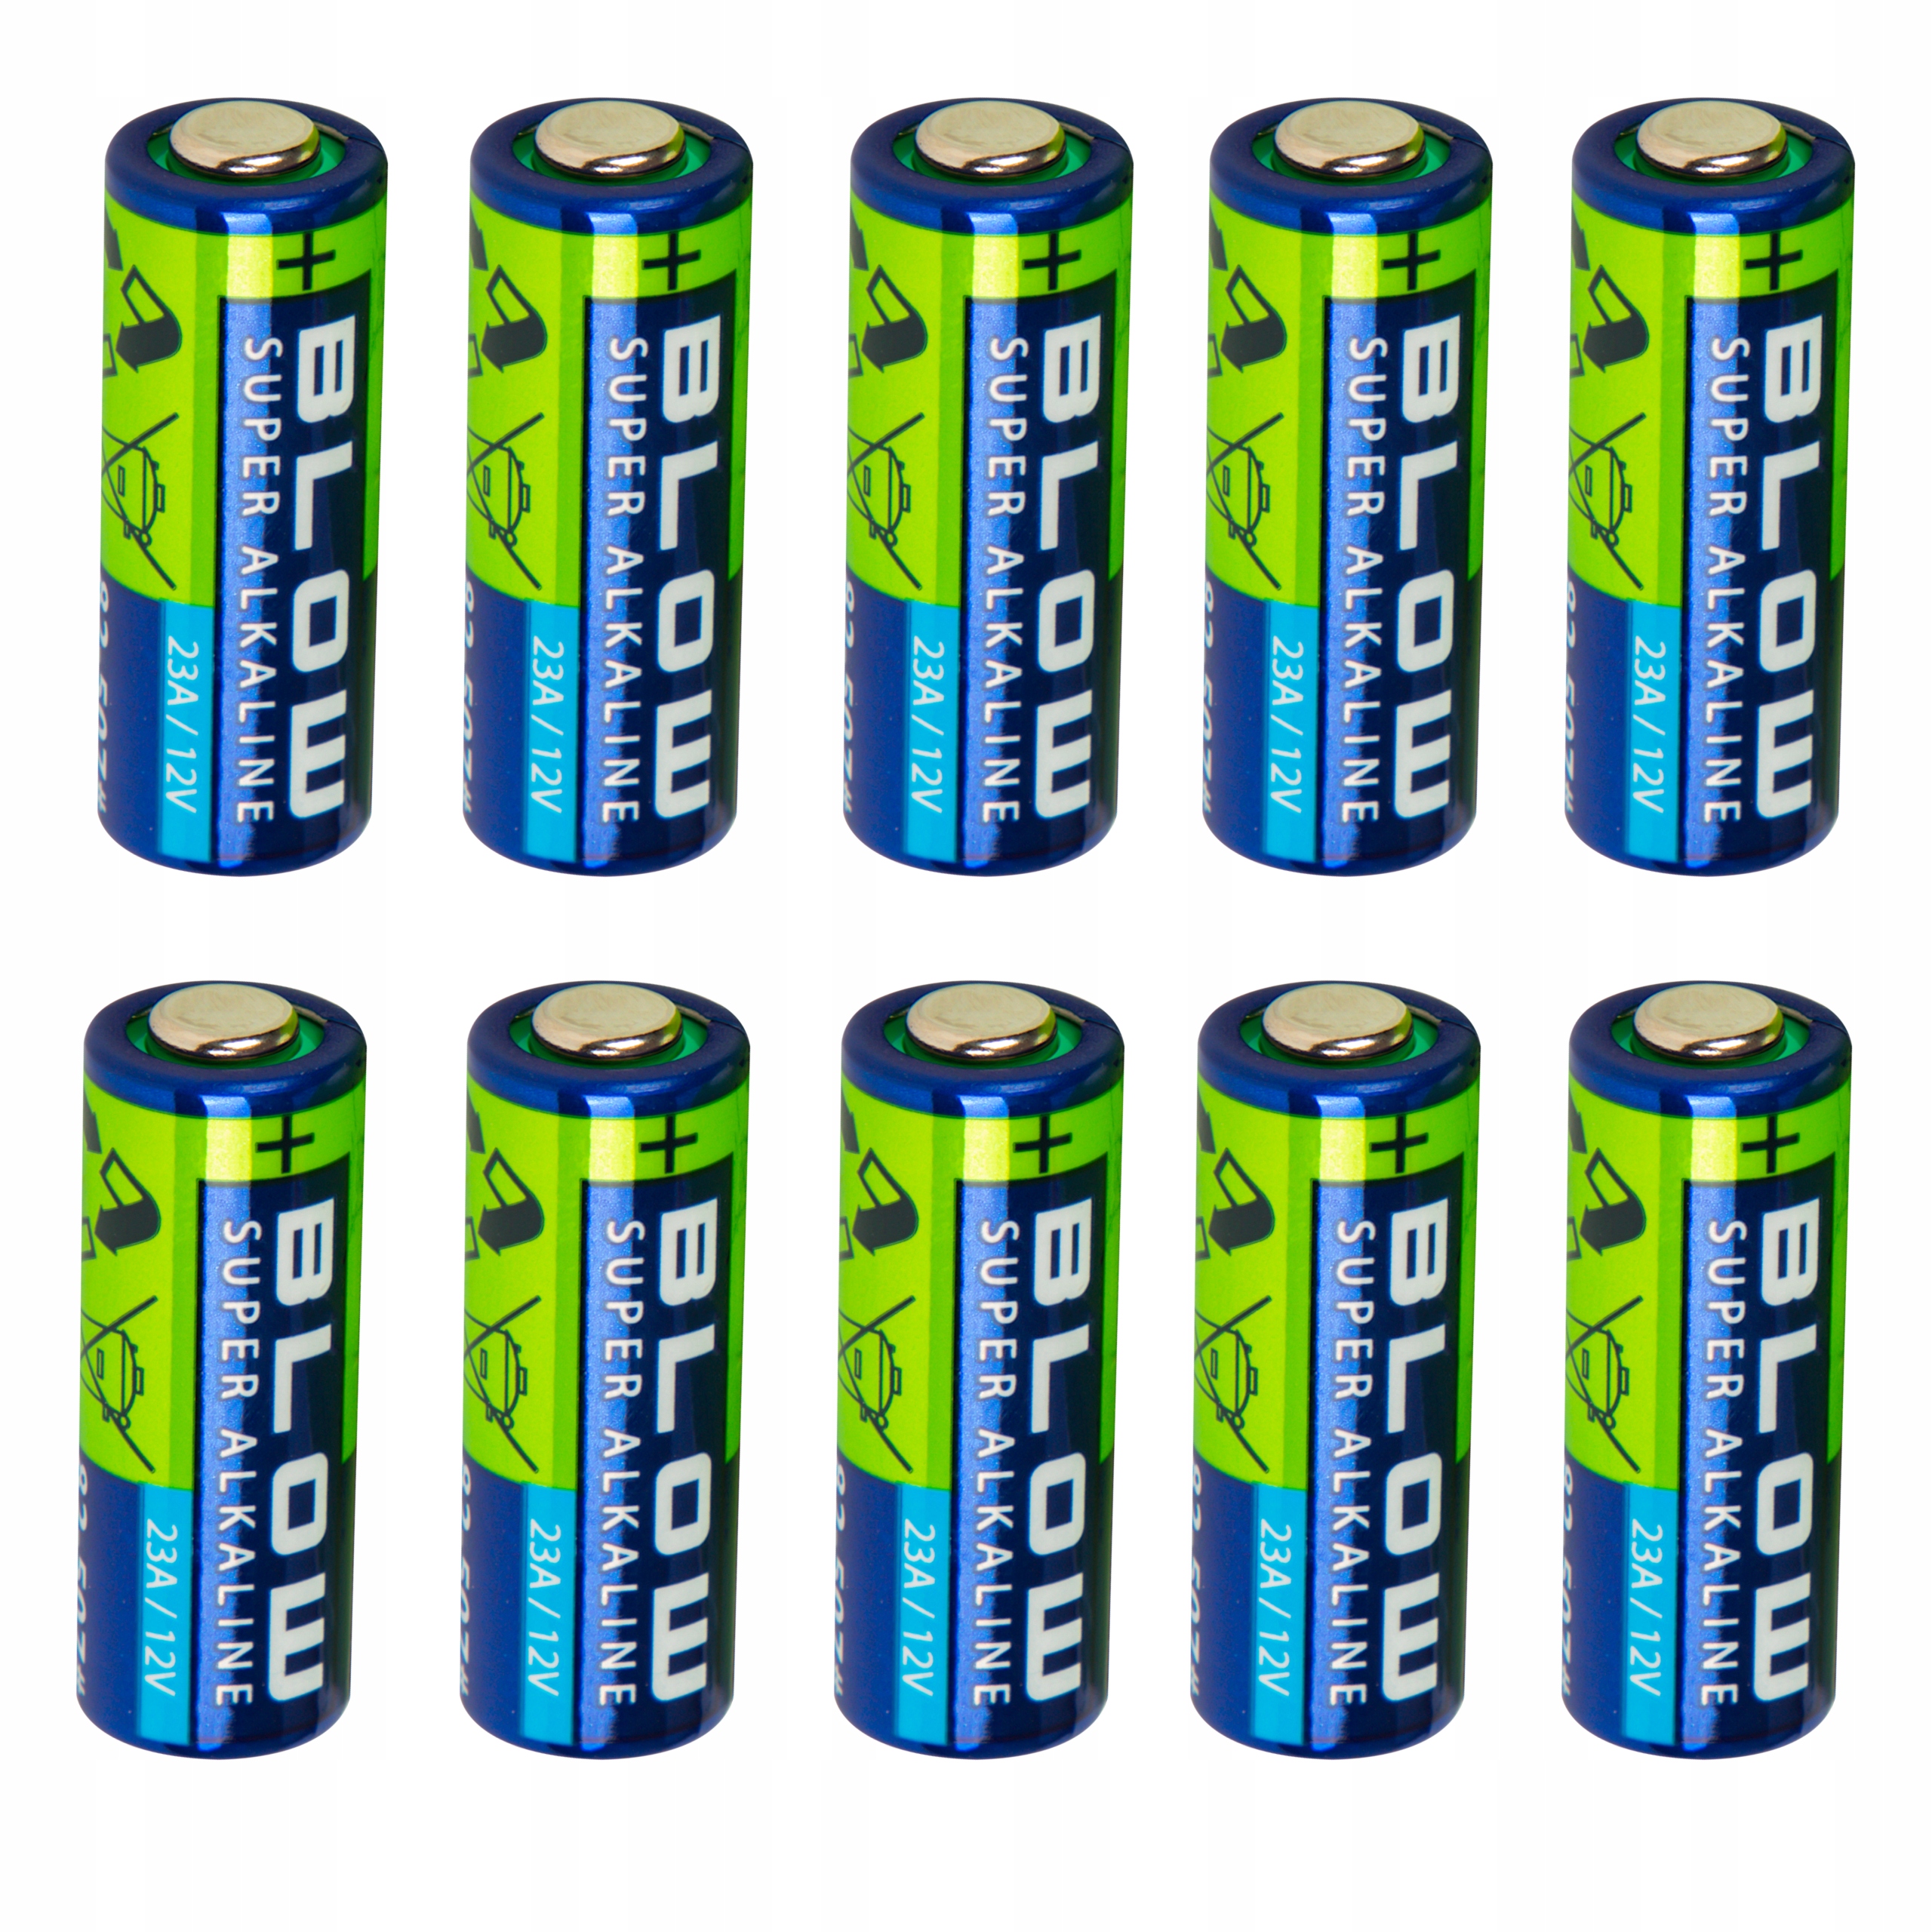 Bateria 23a 12v - Niska cena na